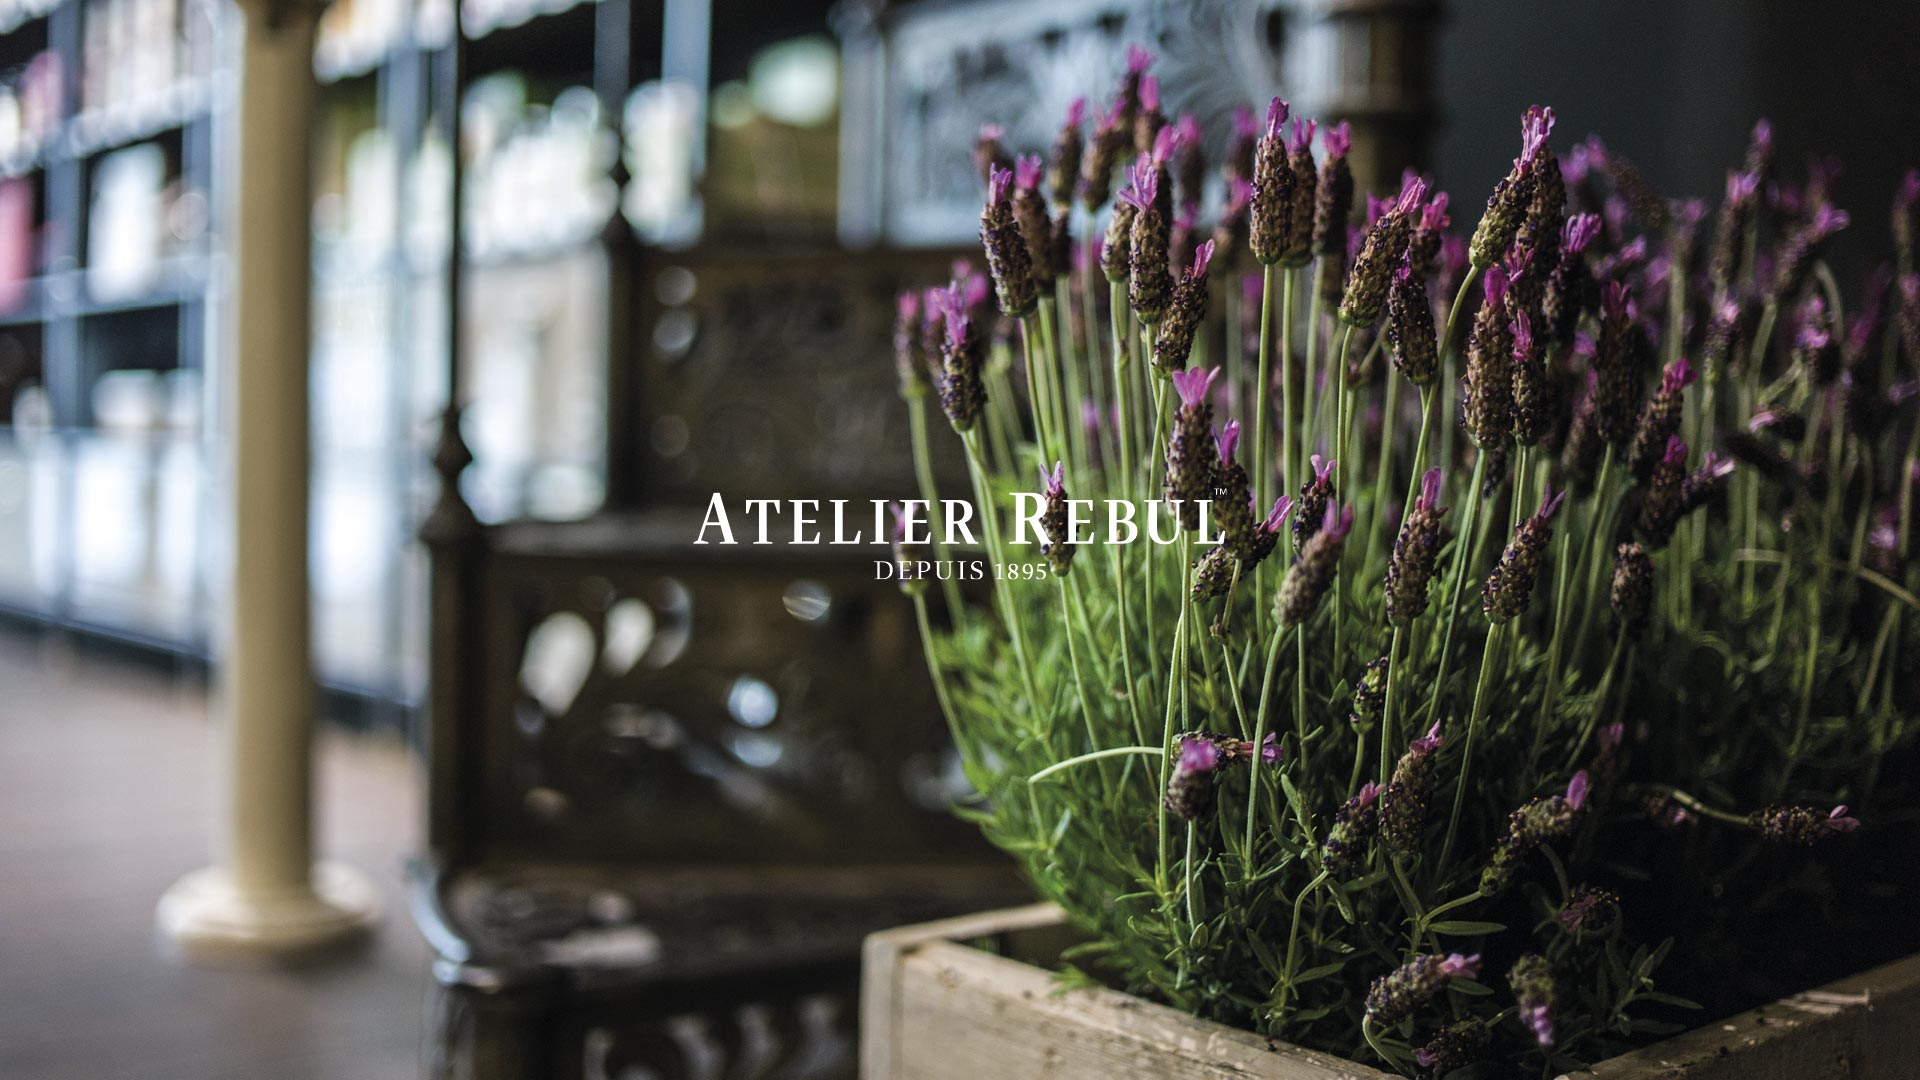 blomsterbed i trækasse med Atelier Rebul logo i front og sløret billede af butikken i baggrunden